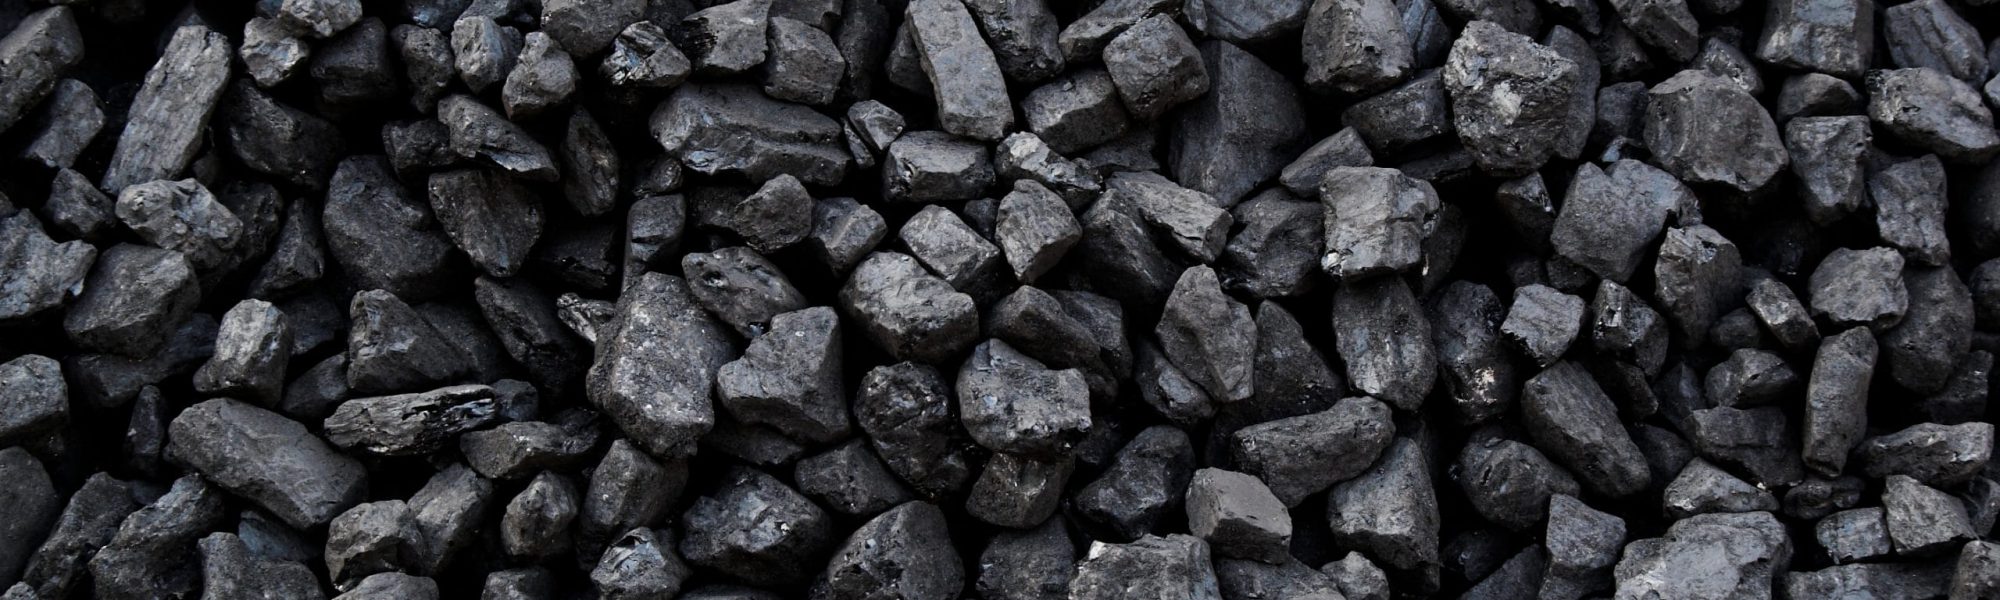 شرکت آرون کربن فرآور یکی از عمده تولیدکنندگان زغال سنگ فرآوری شده جهت مصرف در صنایع فولادی